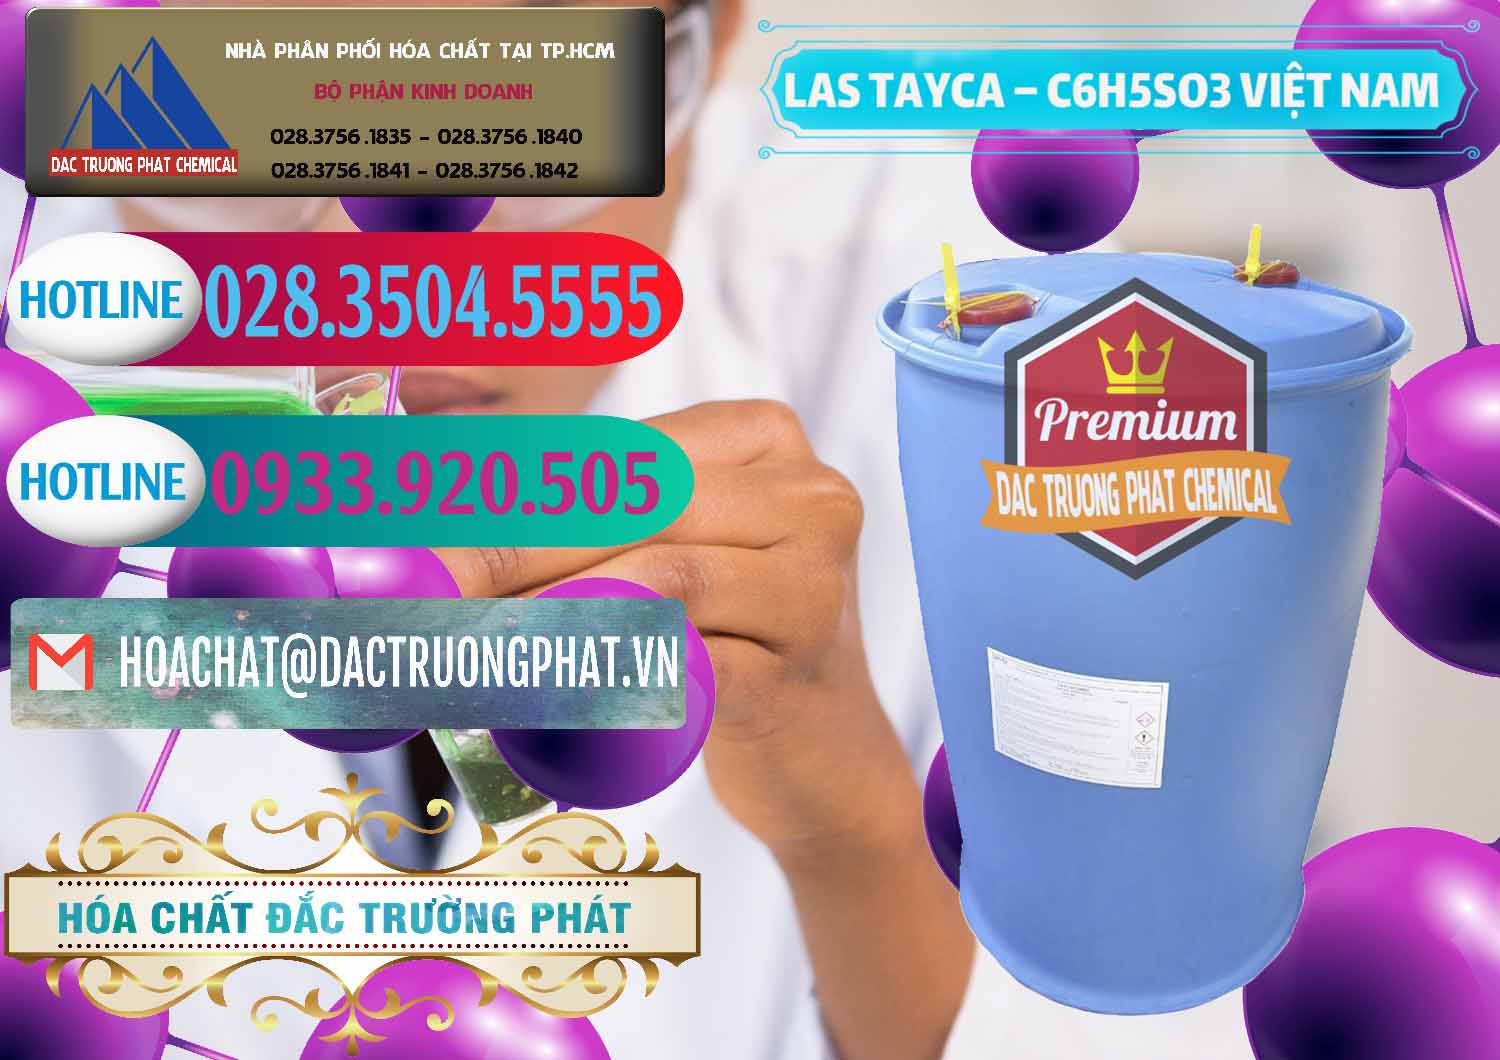 Nơi phân phối & kinh doanh Chất tạo bọt Las Tayca Việt Nam - 0305 - Phân phối & bán hóa chất tại TP.HCM - truongphat.vn